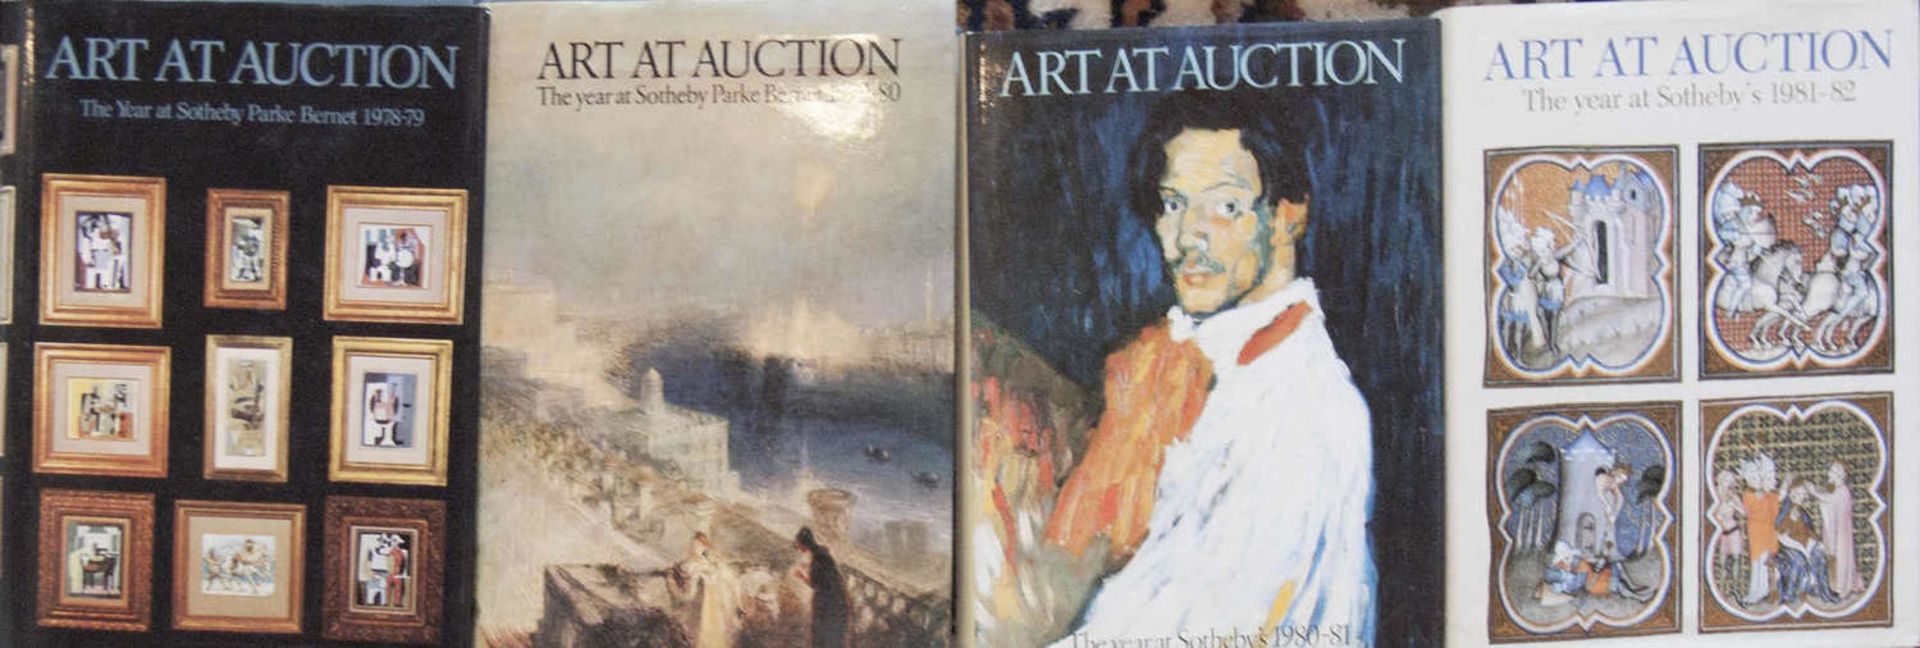 Vier Auktionskataloge, Art at Auction, Sotheby, 1978/79, 1979/80, 1980/81 und 1981/82. Guter